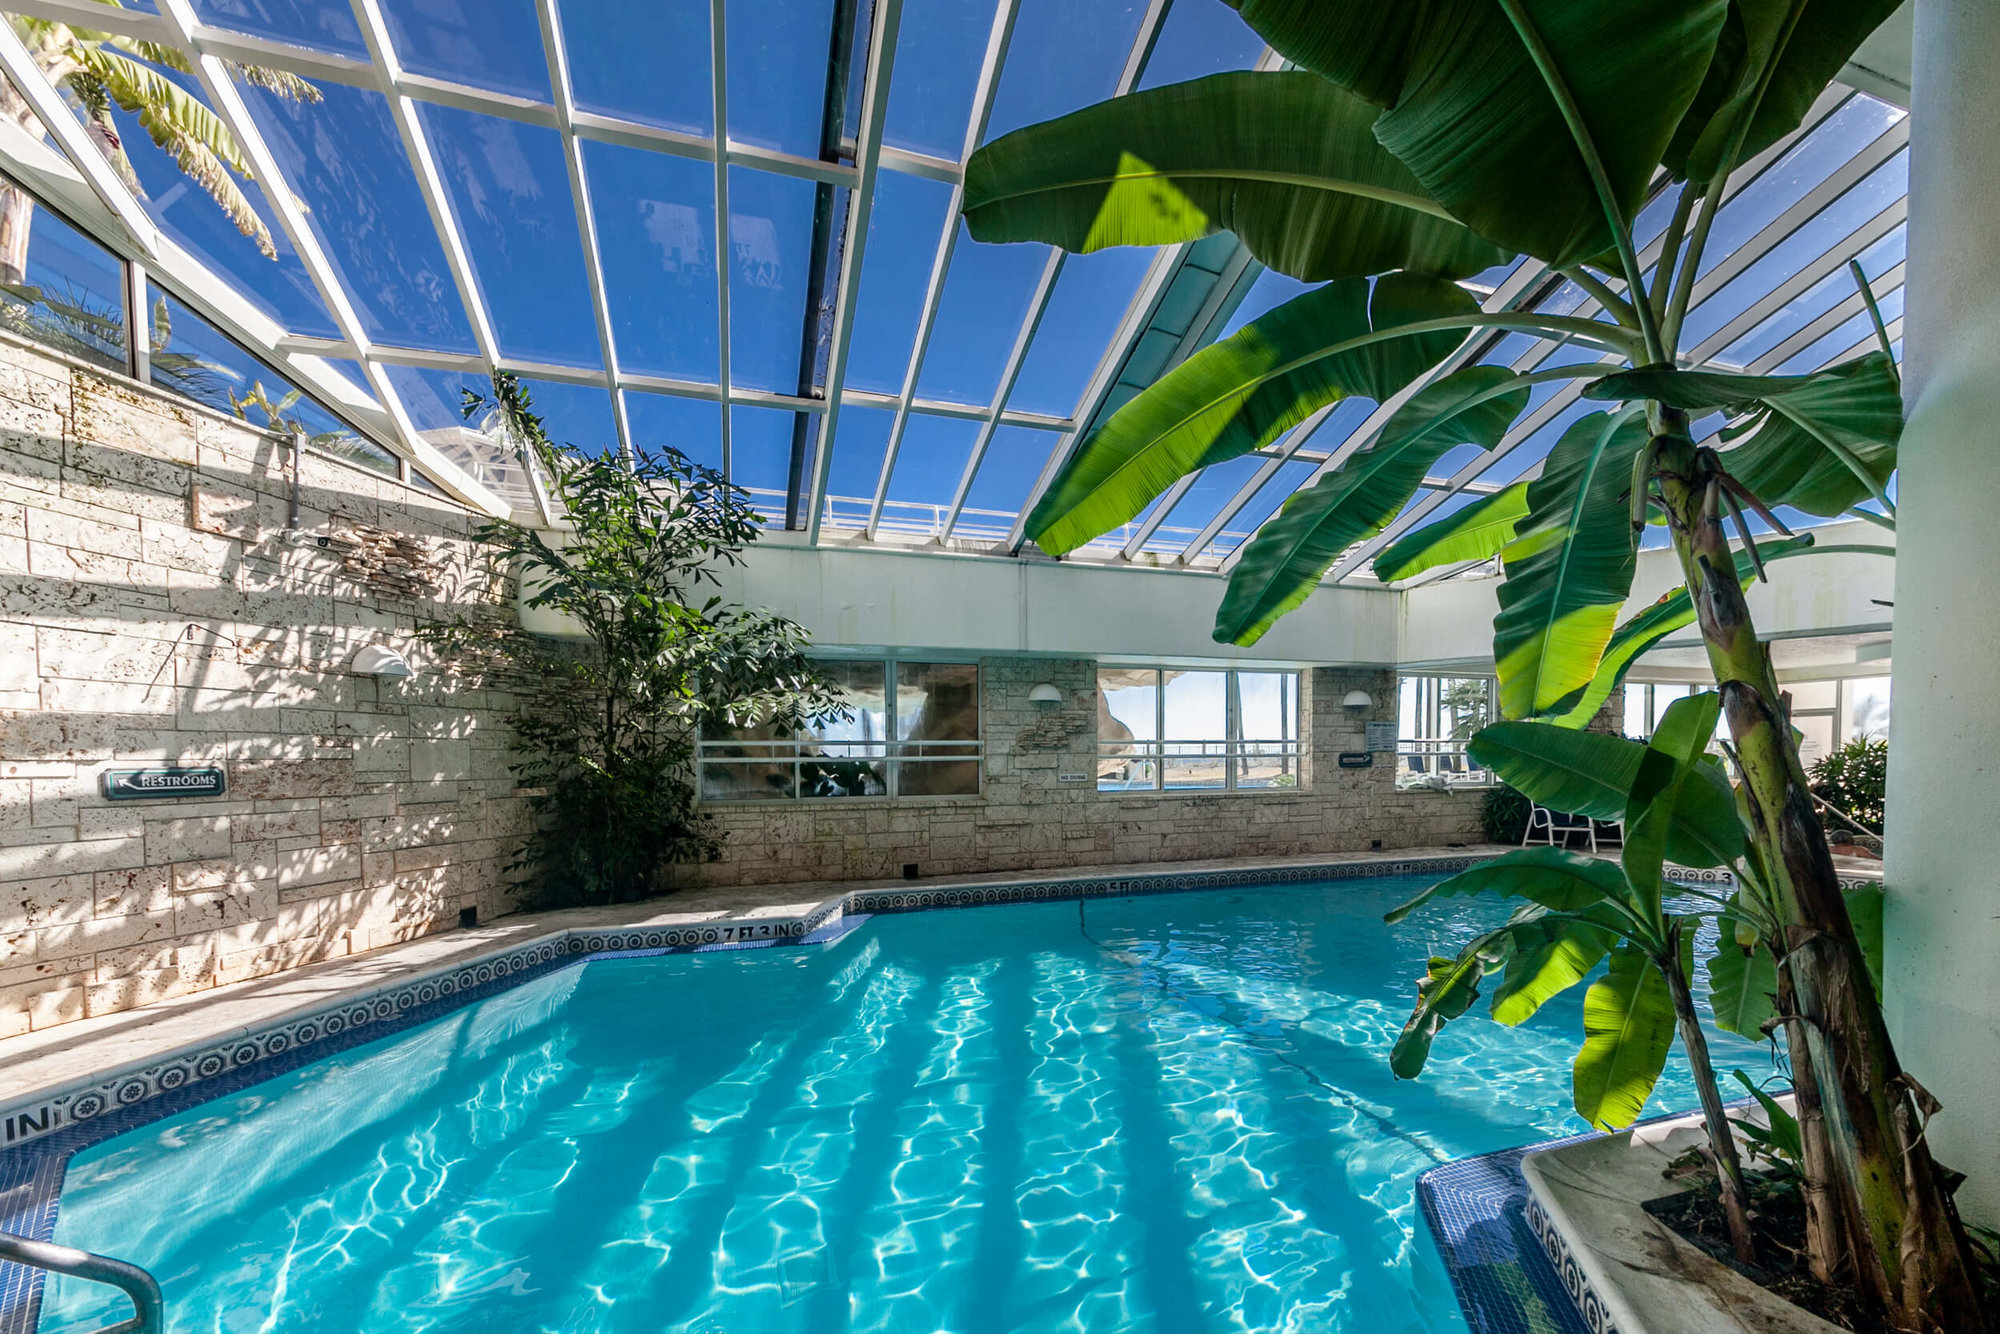 The Eden in Perdido Key has an indoor pool to enjoy